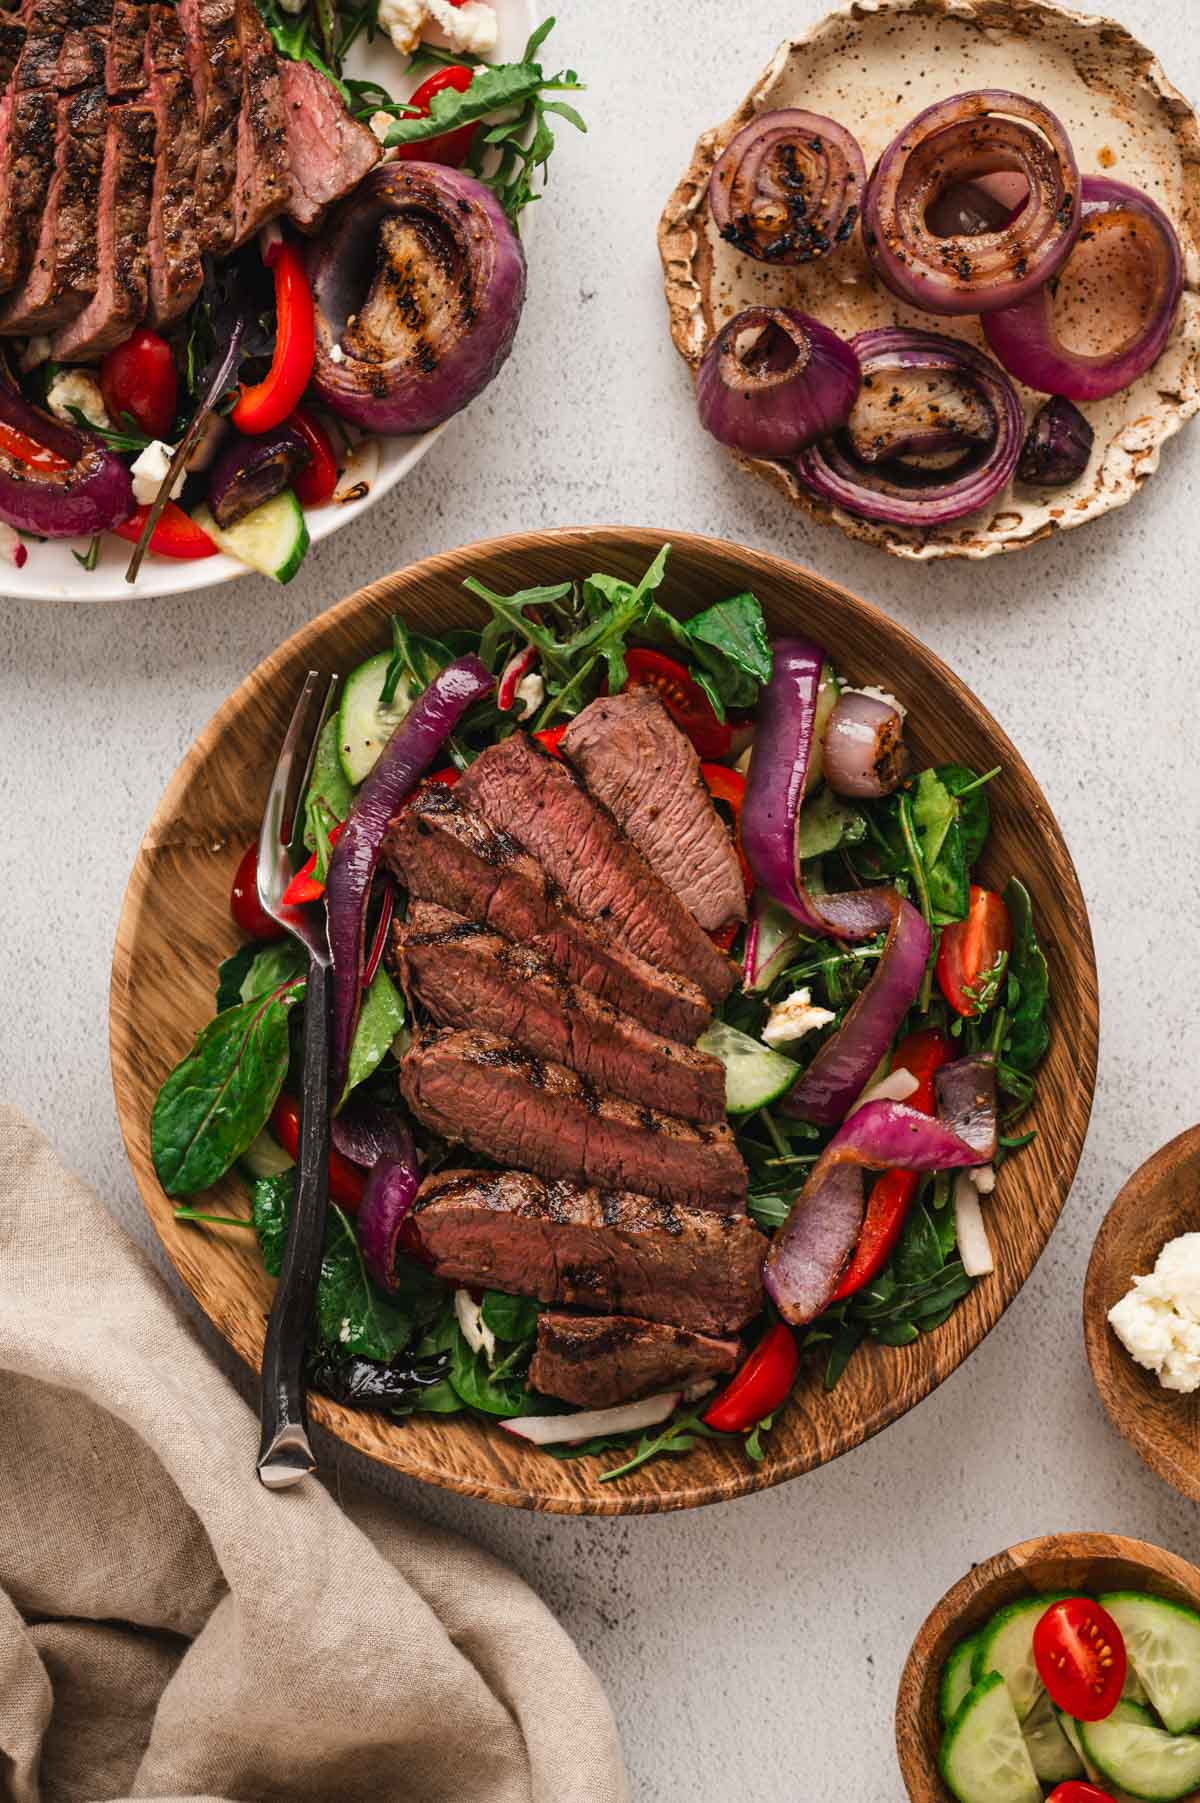 Steak salad on a wood plate.